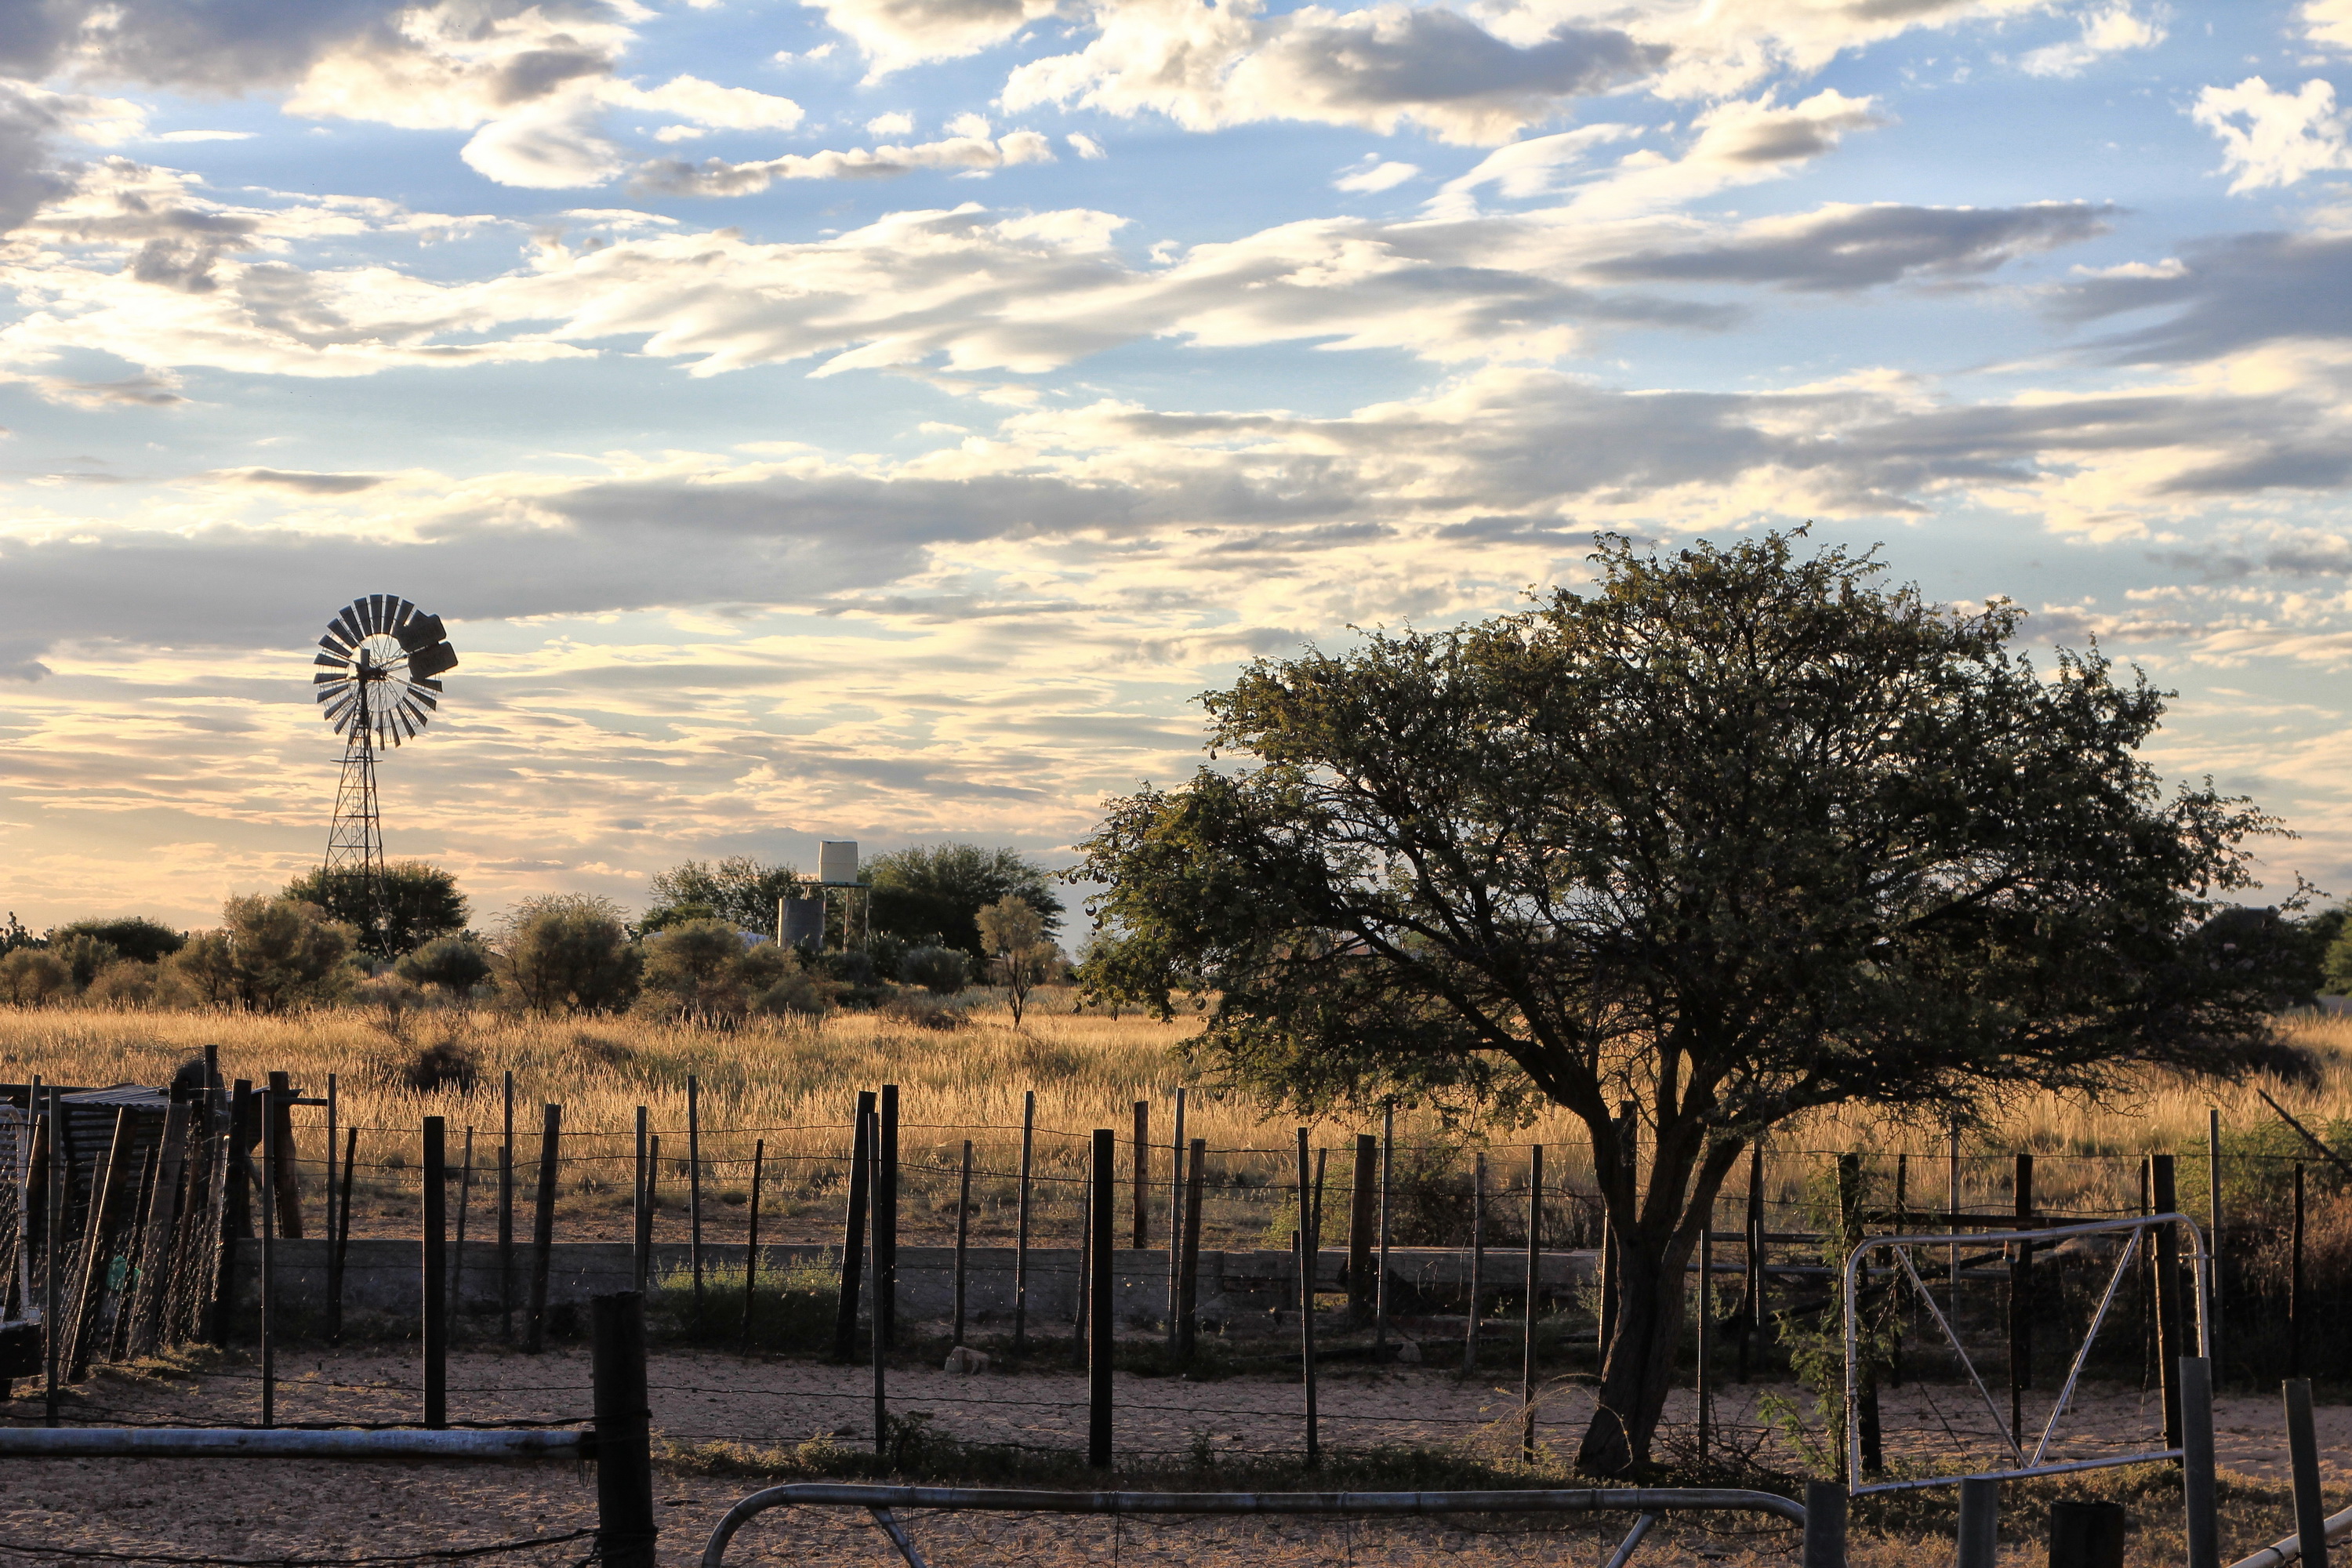 Kalahari sunset – a golden moment. Image: Chris Marais